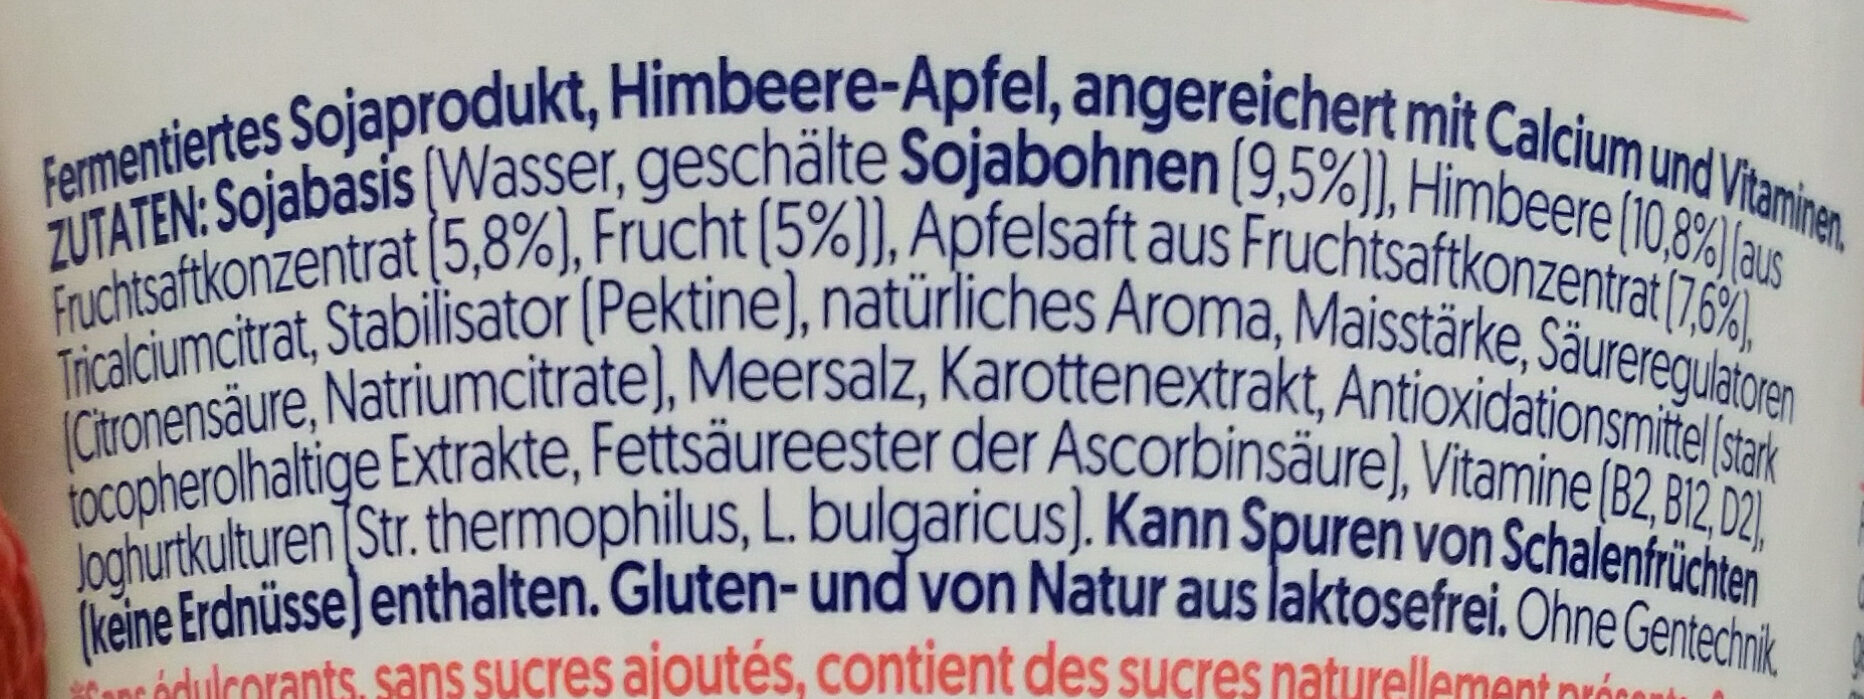 Himbeere Apfel ohne Zuckerzusatz - Ingredienti - de